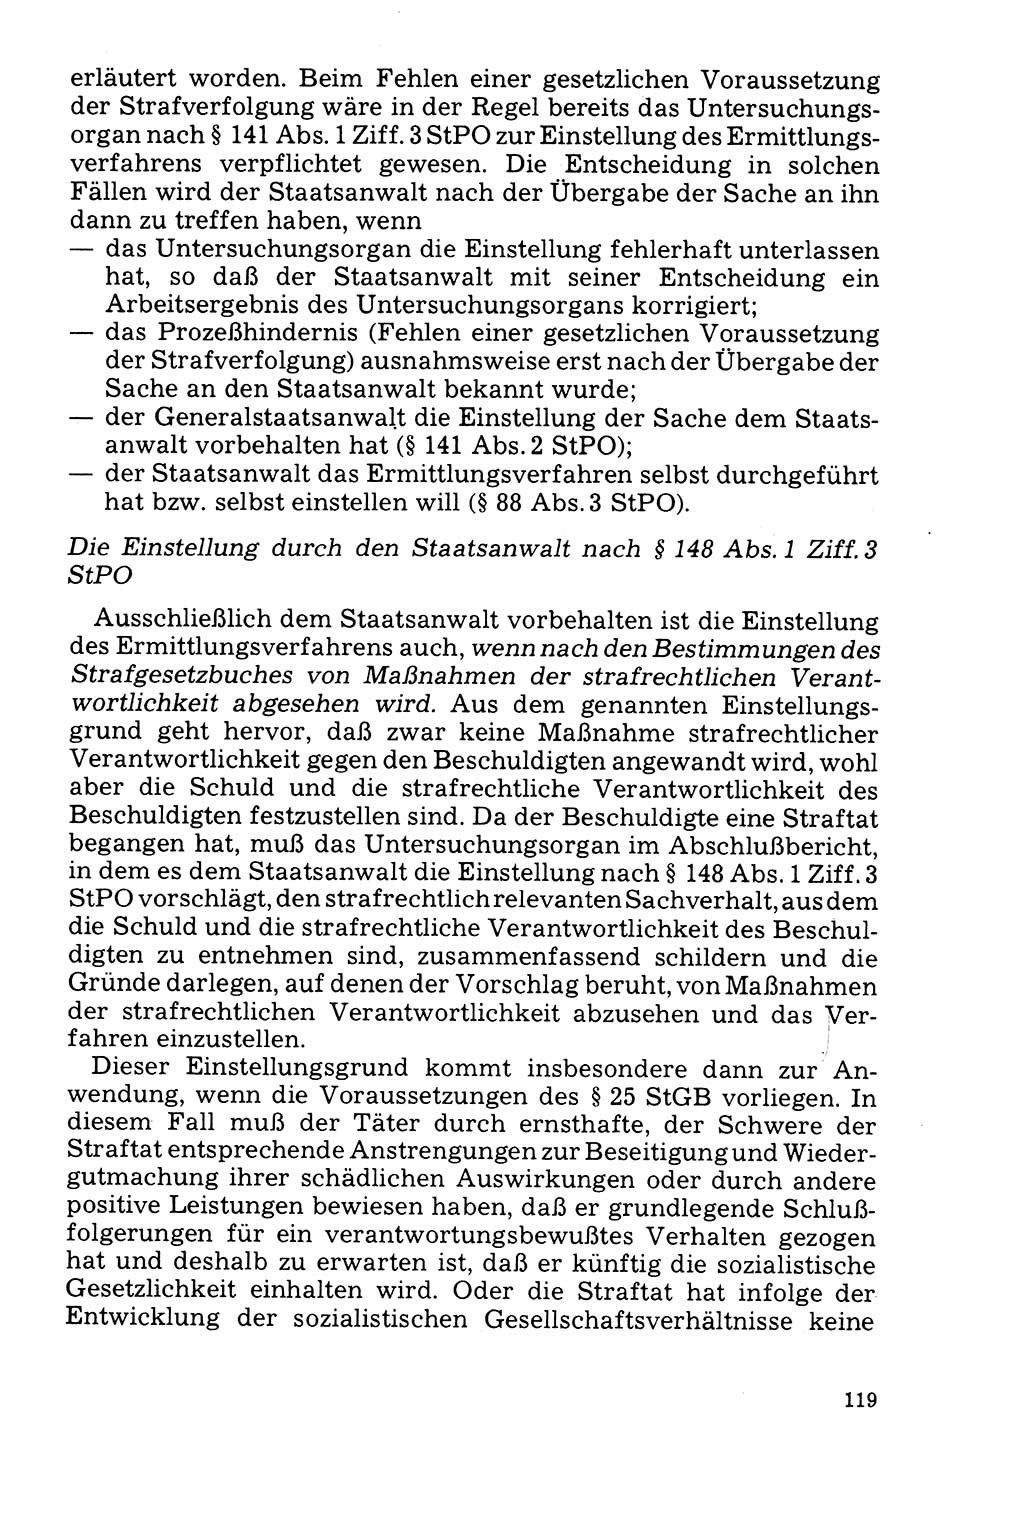 Der Abschluß des Ermittlungsverfahrens [Deutsche Demokratische Republik (DDR)] 1978, Seite 119 (Abschl. EV DDR 1978, S. 119)